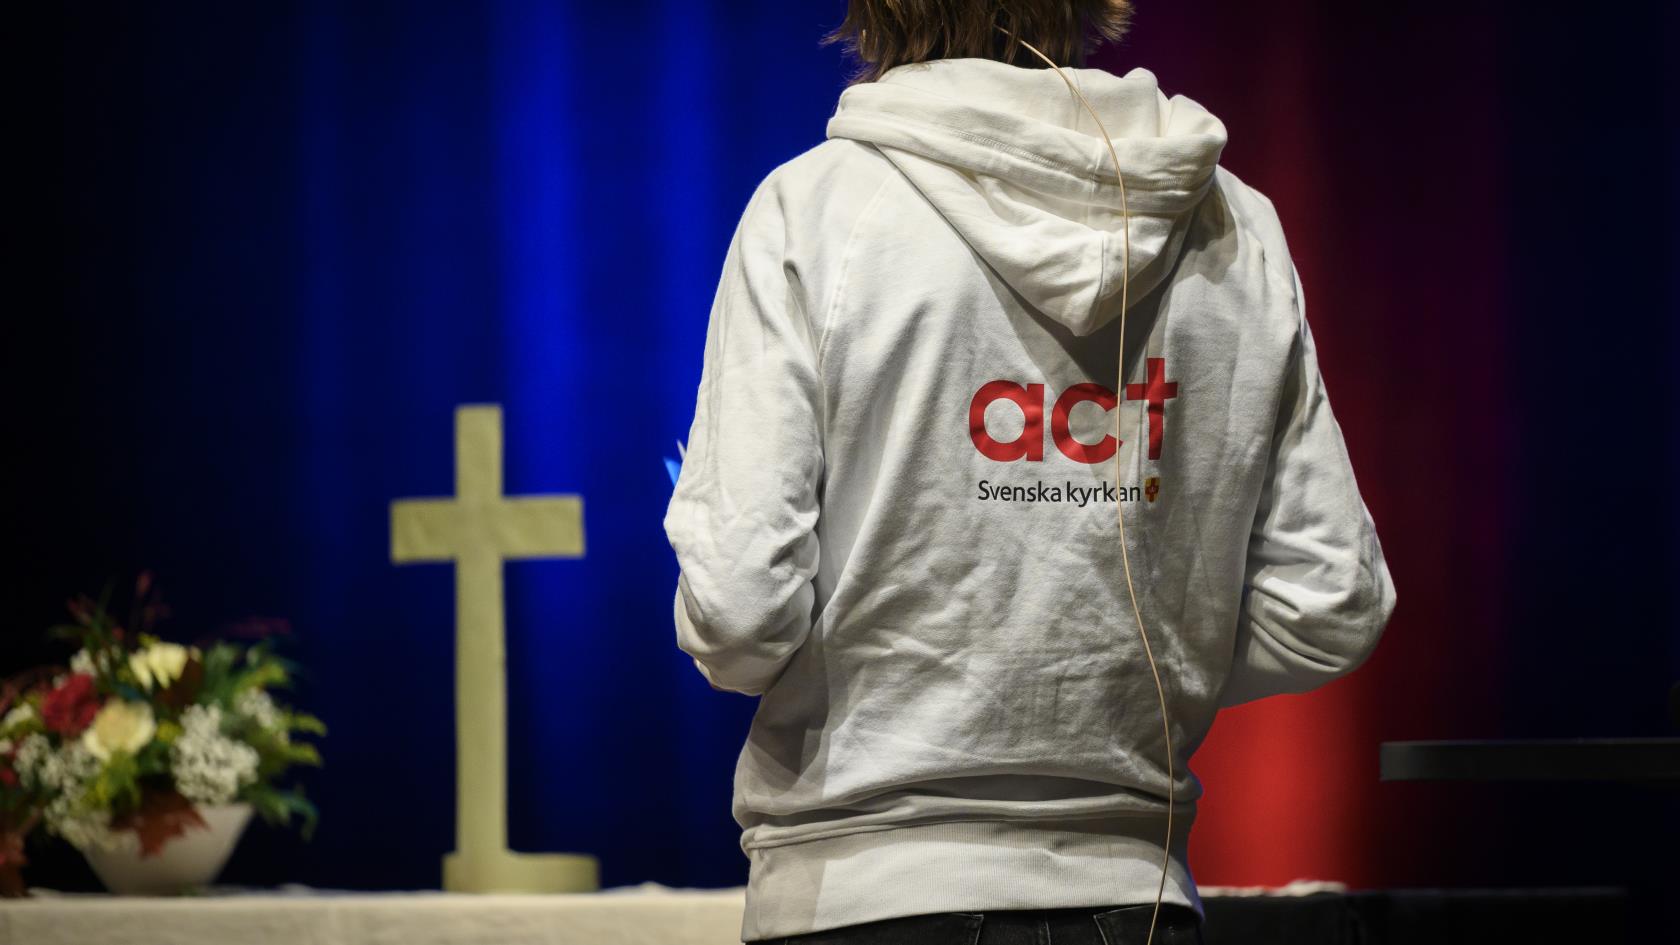 Altare med ett kors. Tyggtavlan av en person i luvtröva med texten Act Svenska kyrkan på ryggen. 